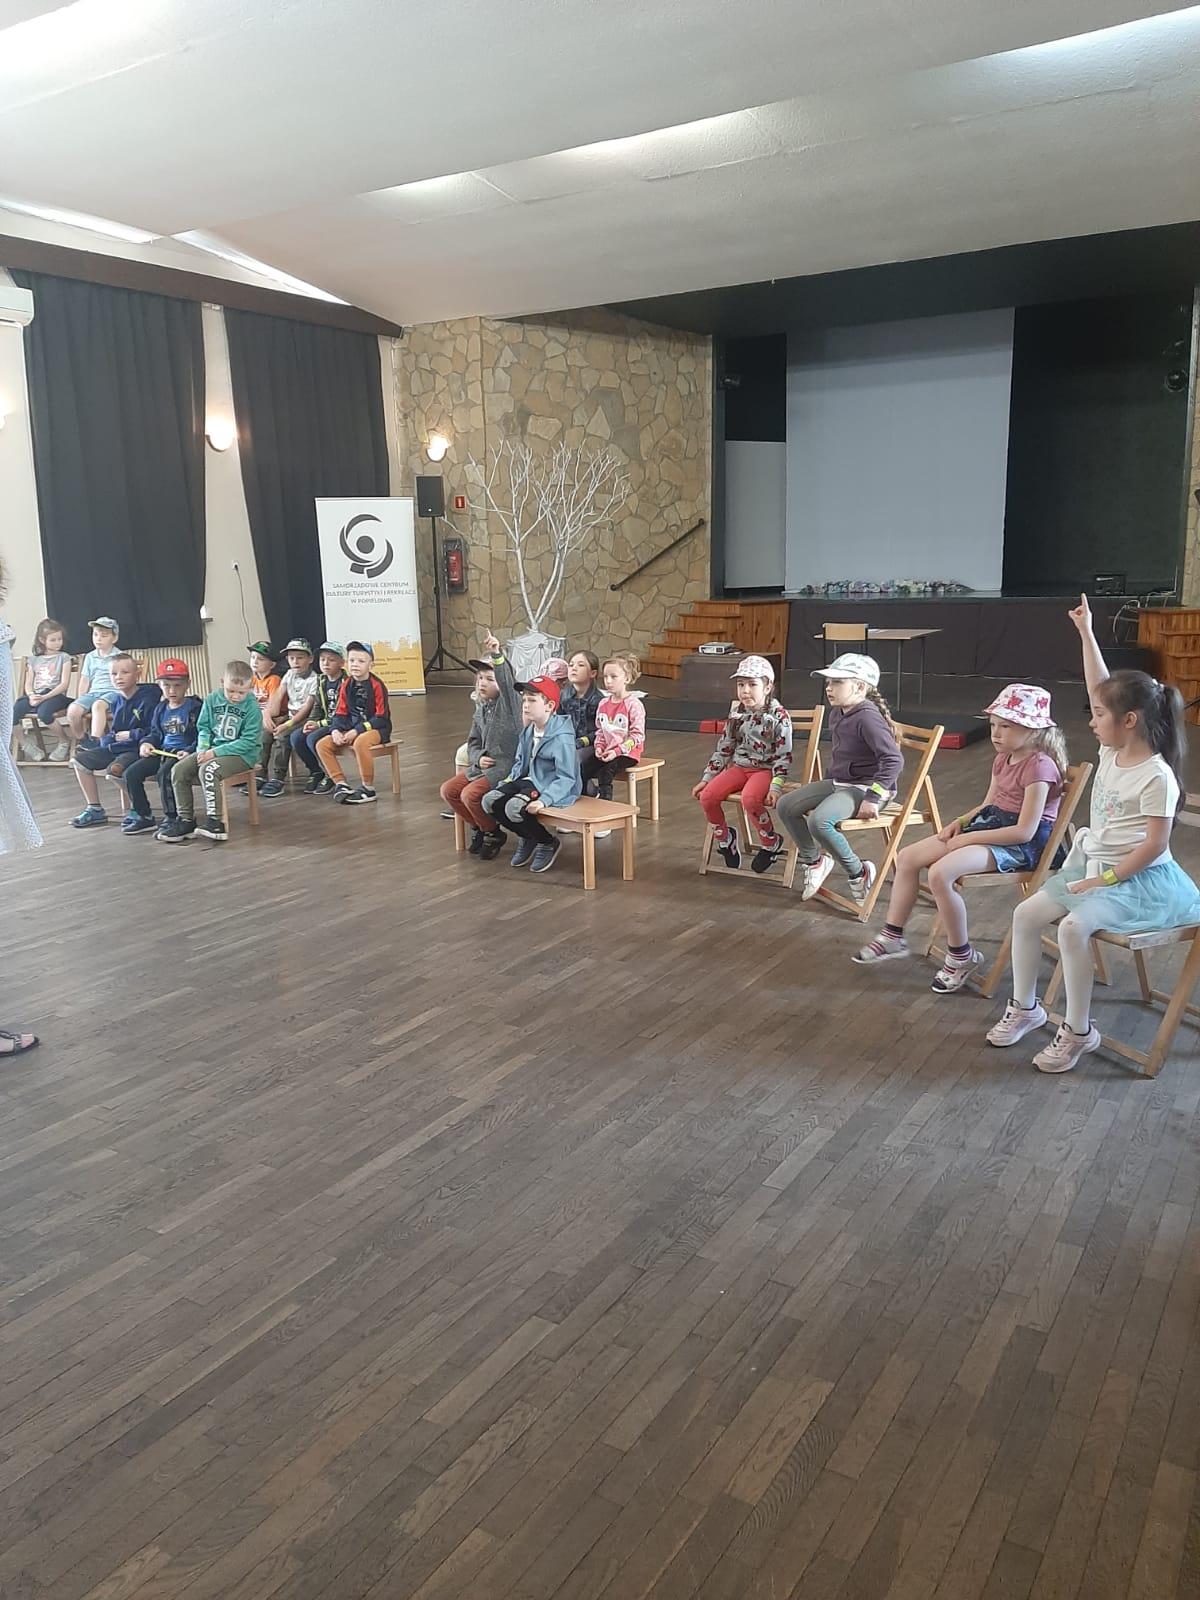 Warsztaty wokalno-muzyczne taneczne teatralne w SCKTiR w Popielowie